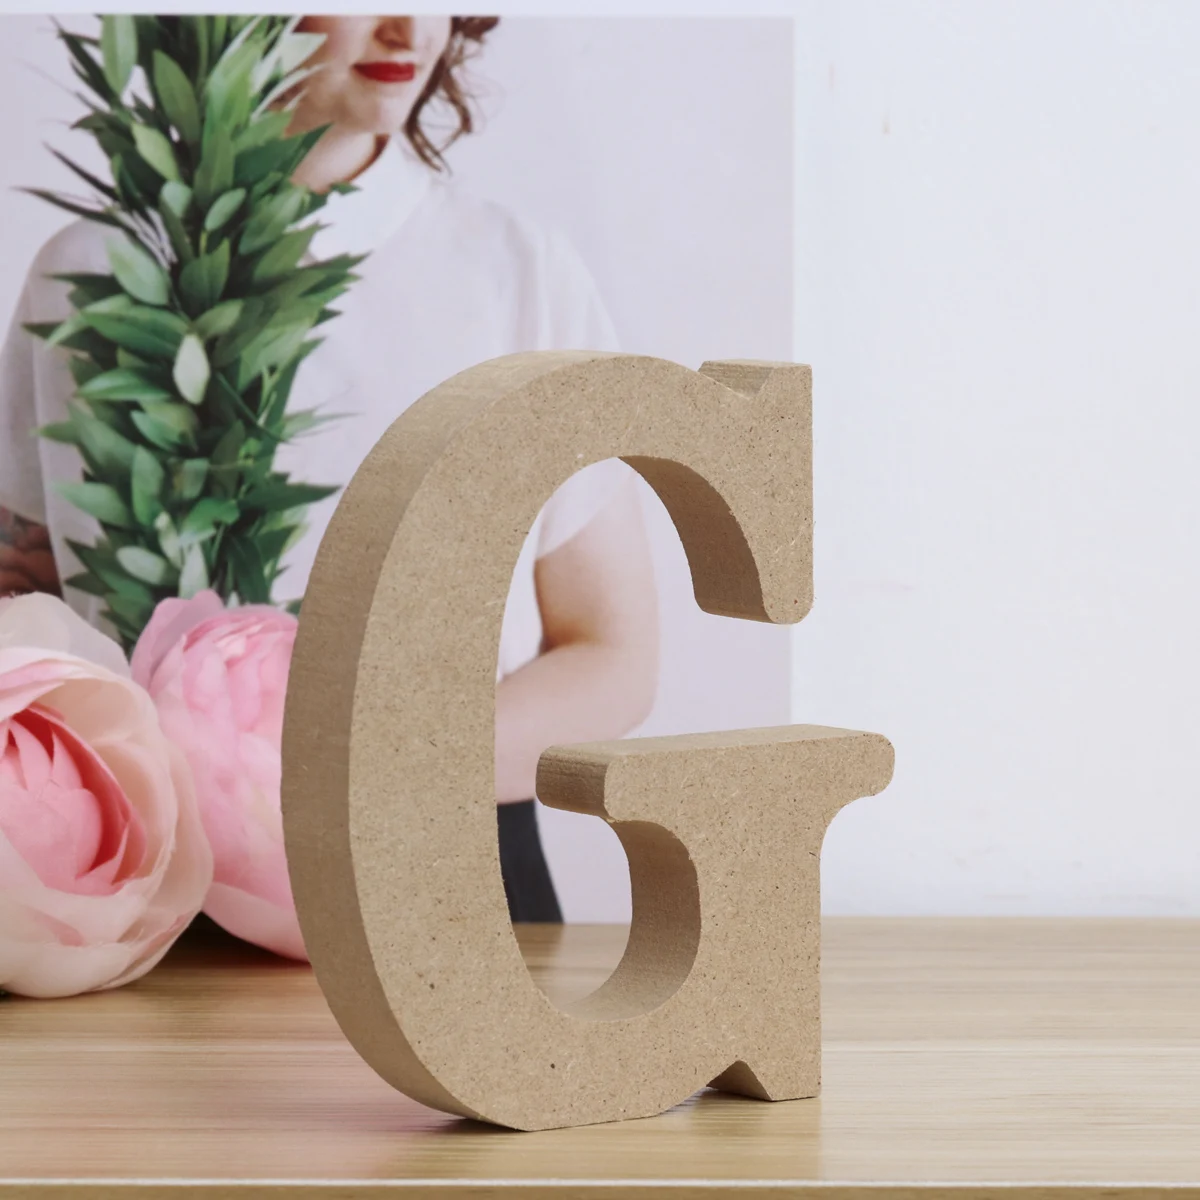 Деревянные буквы алфавита символ доска толстые украшения для дома стены дома офиса Edding День рождения украшения - Цвет: G